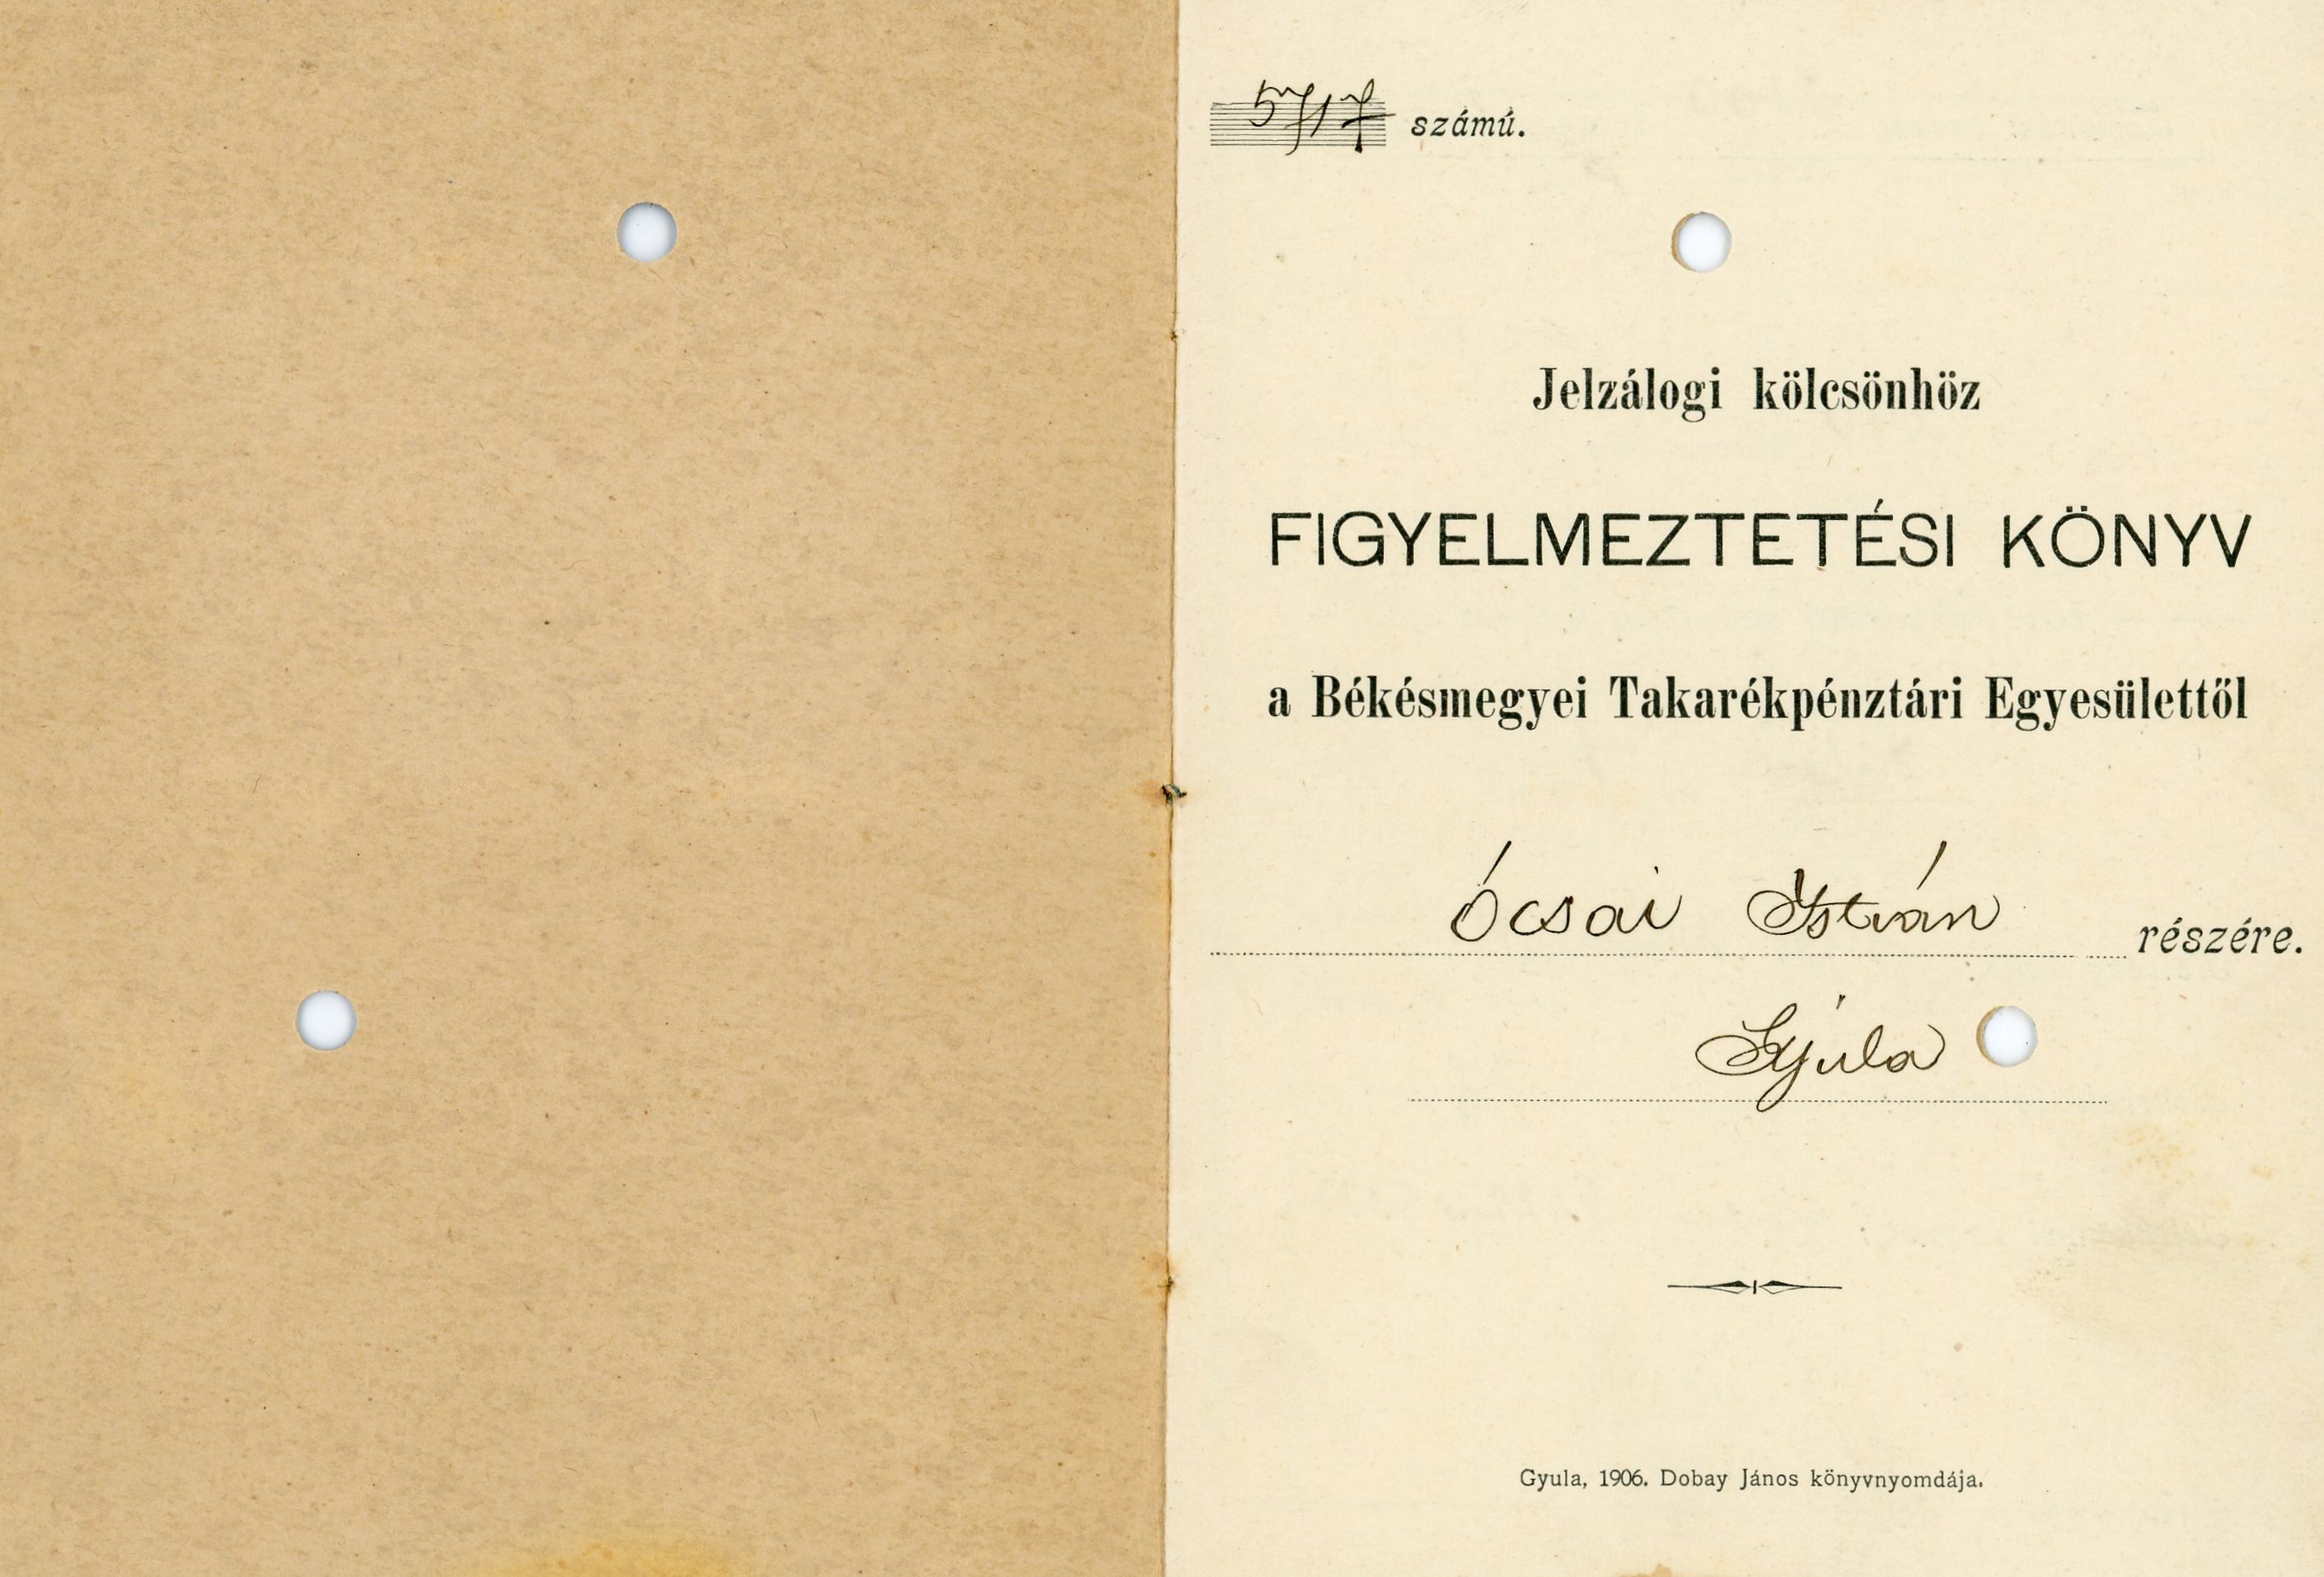 Jelzálogi kölcsönhöz figyelmeztetési könyv, nyomtatott, kiállított (Erkel Ferenc Múzeum CC BY-NC-SA)